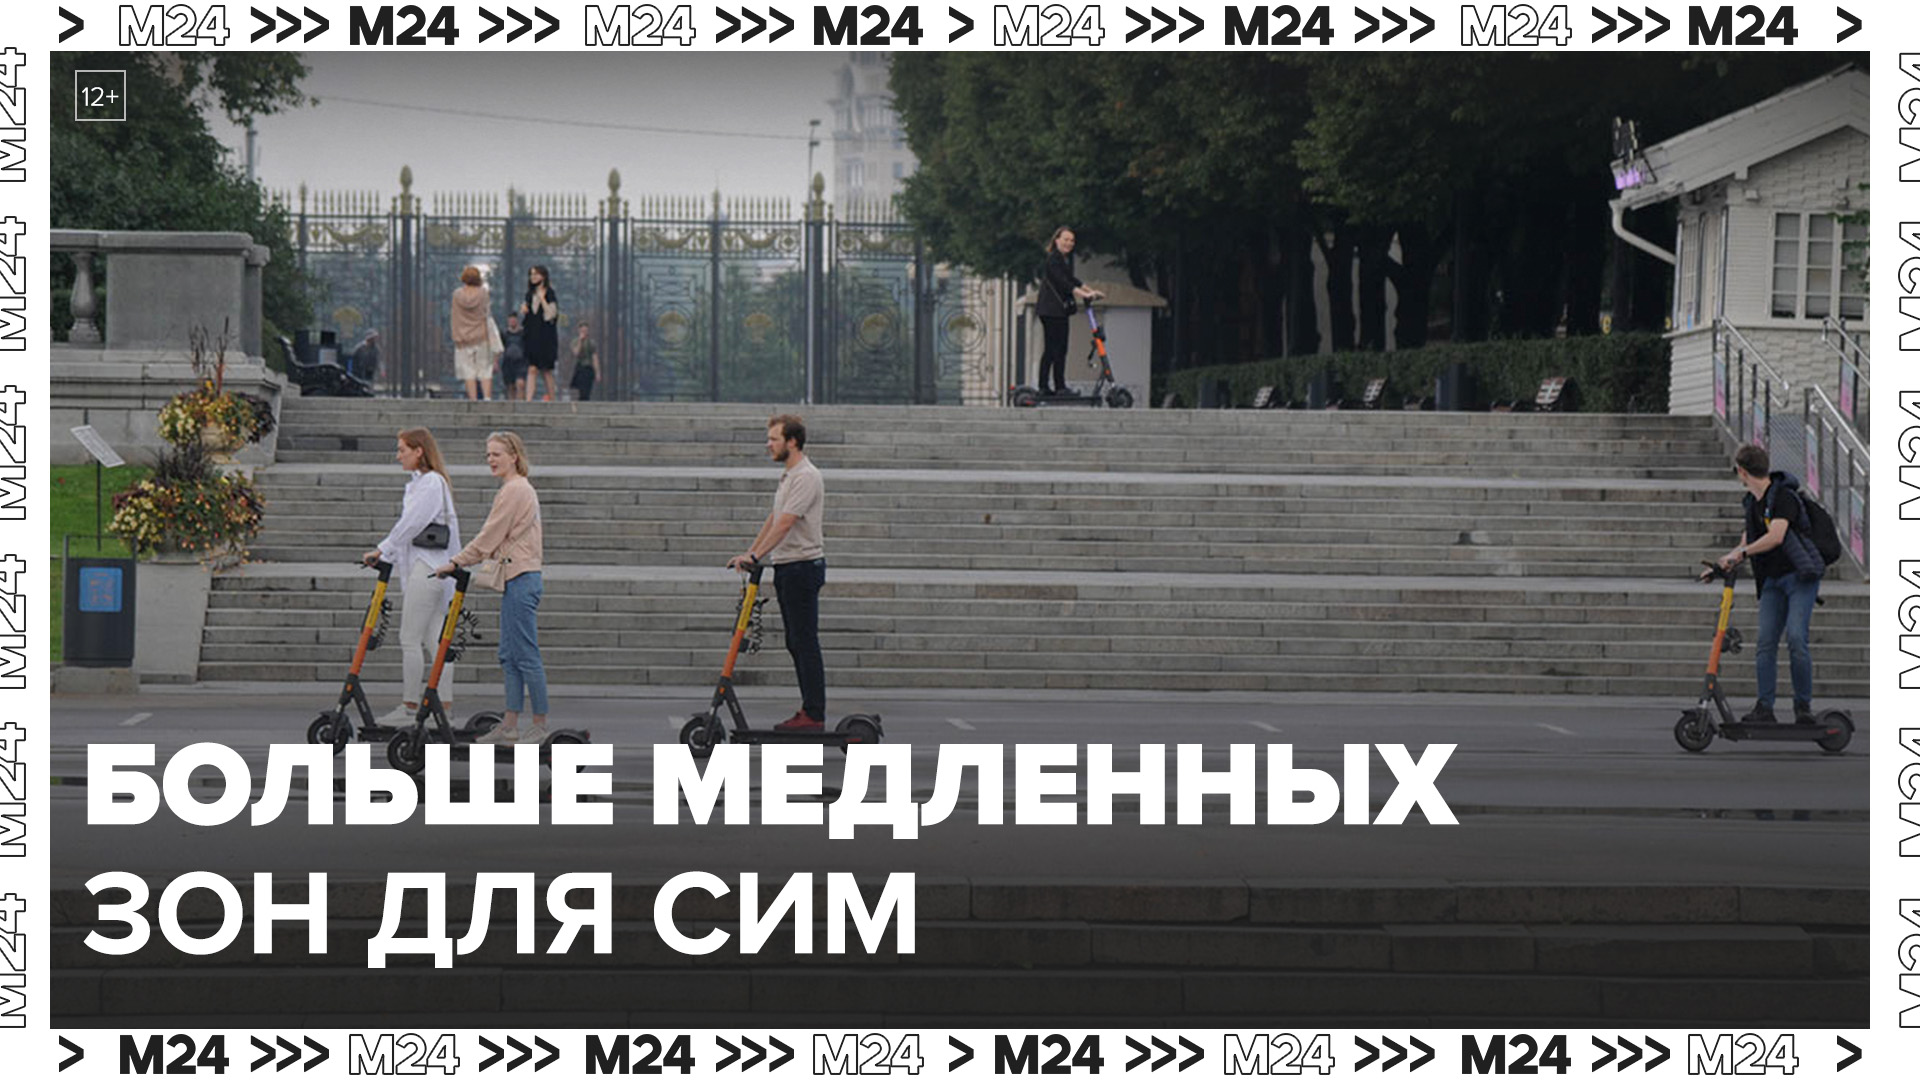 Количество медленных зон увеличили в столице - Москва 24